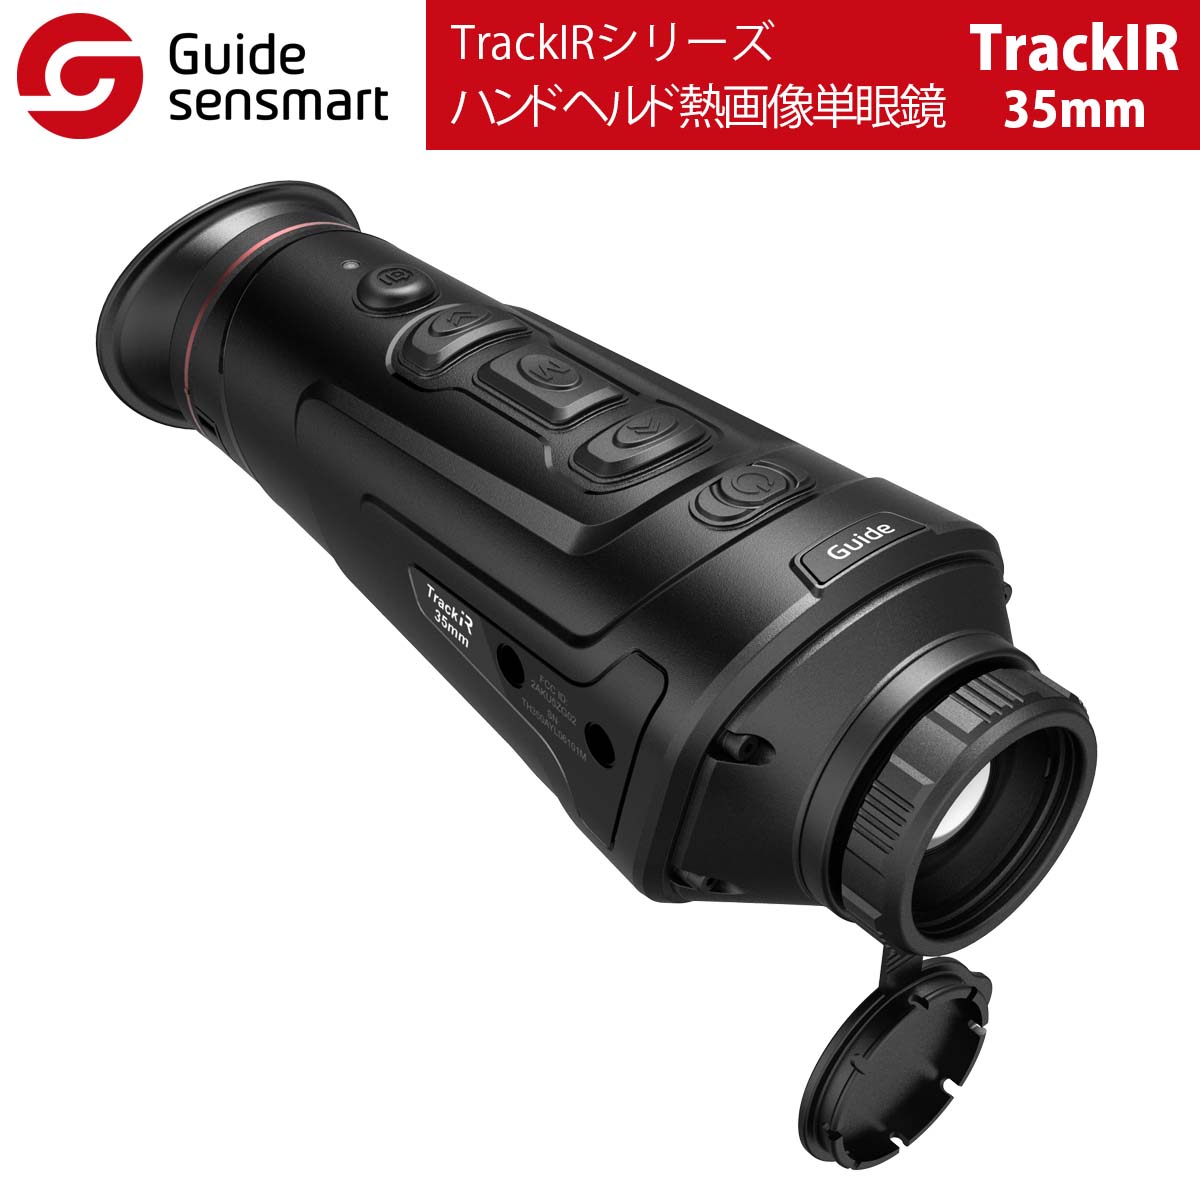 Guide sensmart【メーカー正規品】 ハンドヘルド熱画像単眼鏡 TrackIR-35mm（TrackIRシリーズ）自動電源オフ 光漏れ防止 超無音ボタン ノイズレスシャッターキャリブレーション